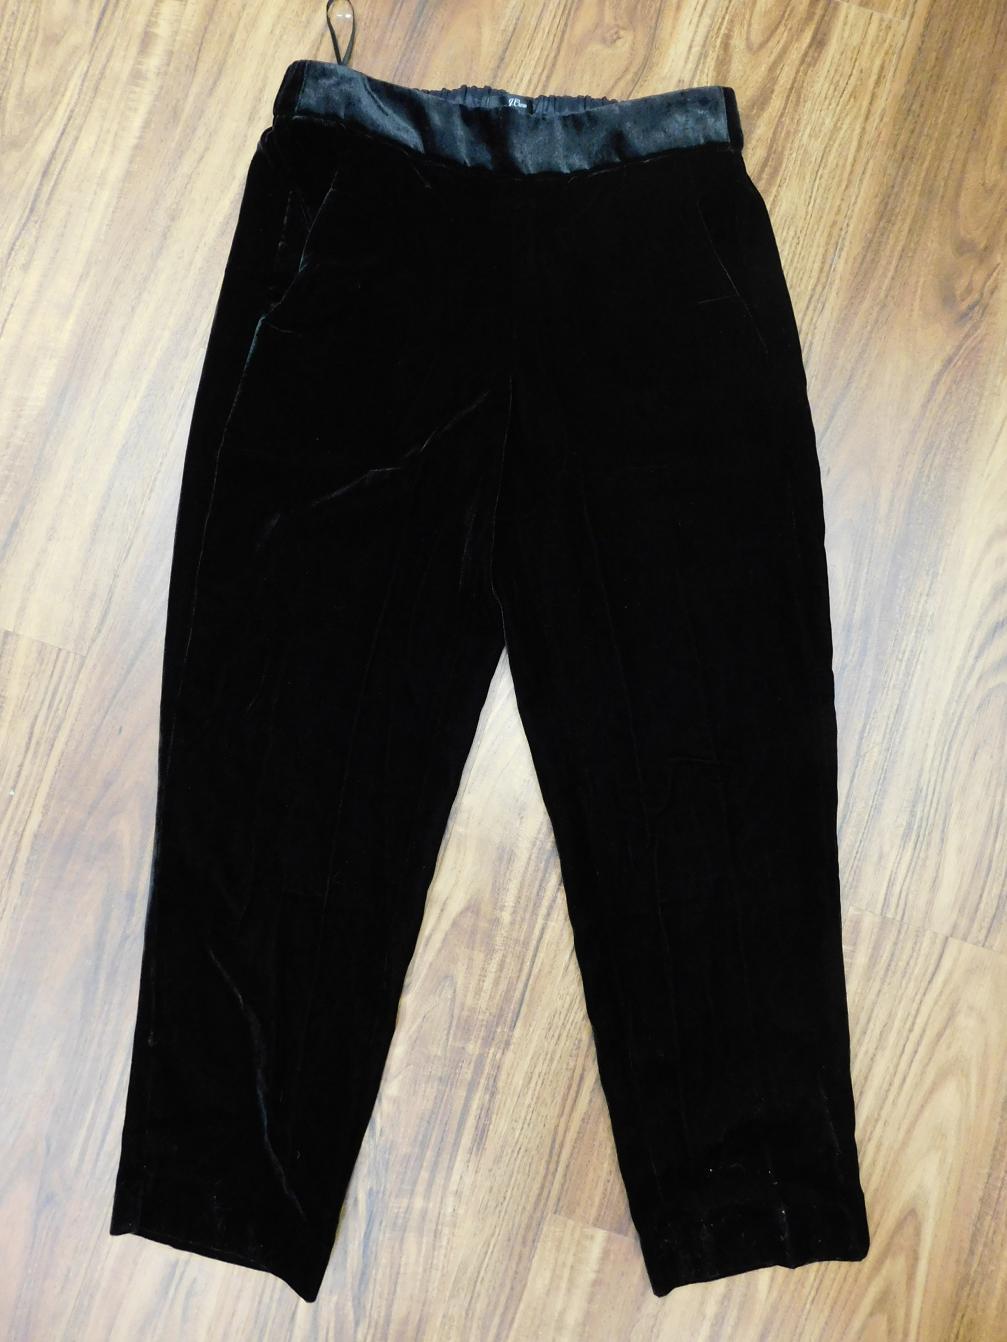 J.Crew Pull-on easy pants in velvet sz 4 black j5014 $110 LYH | eBay